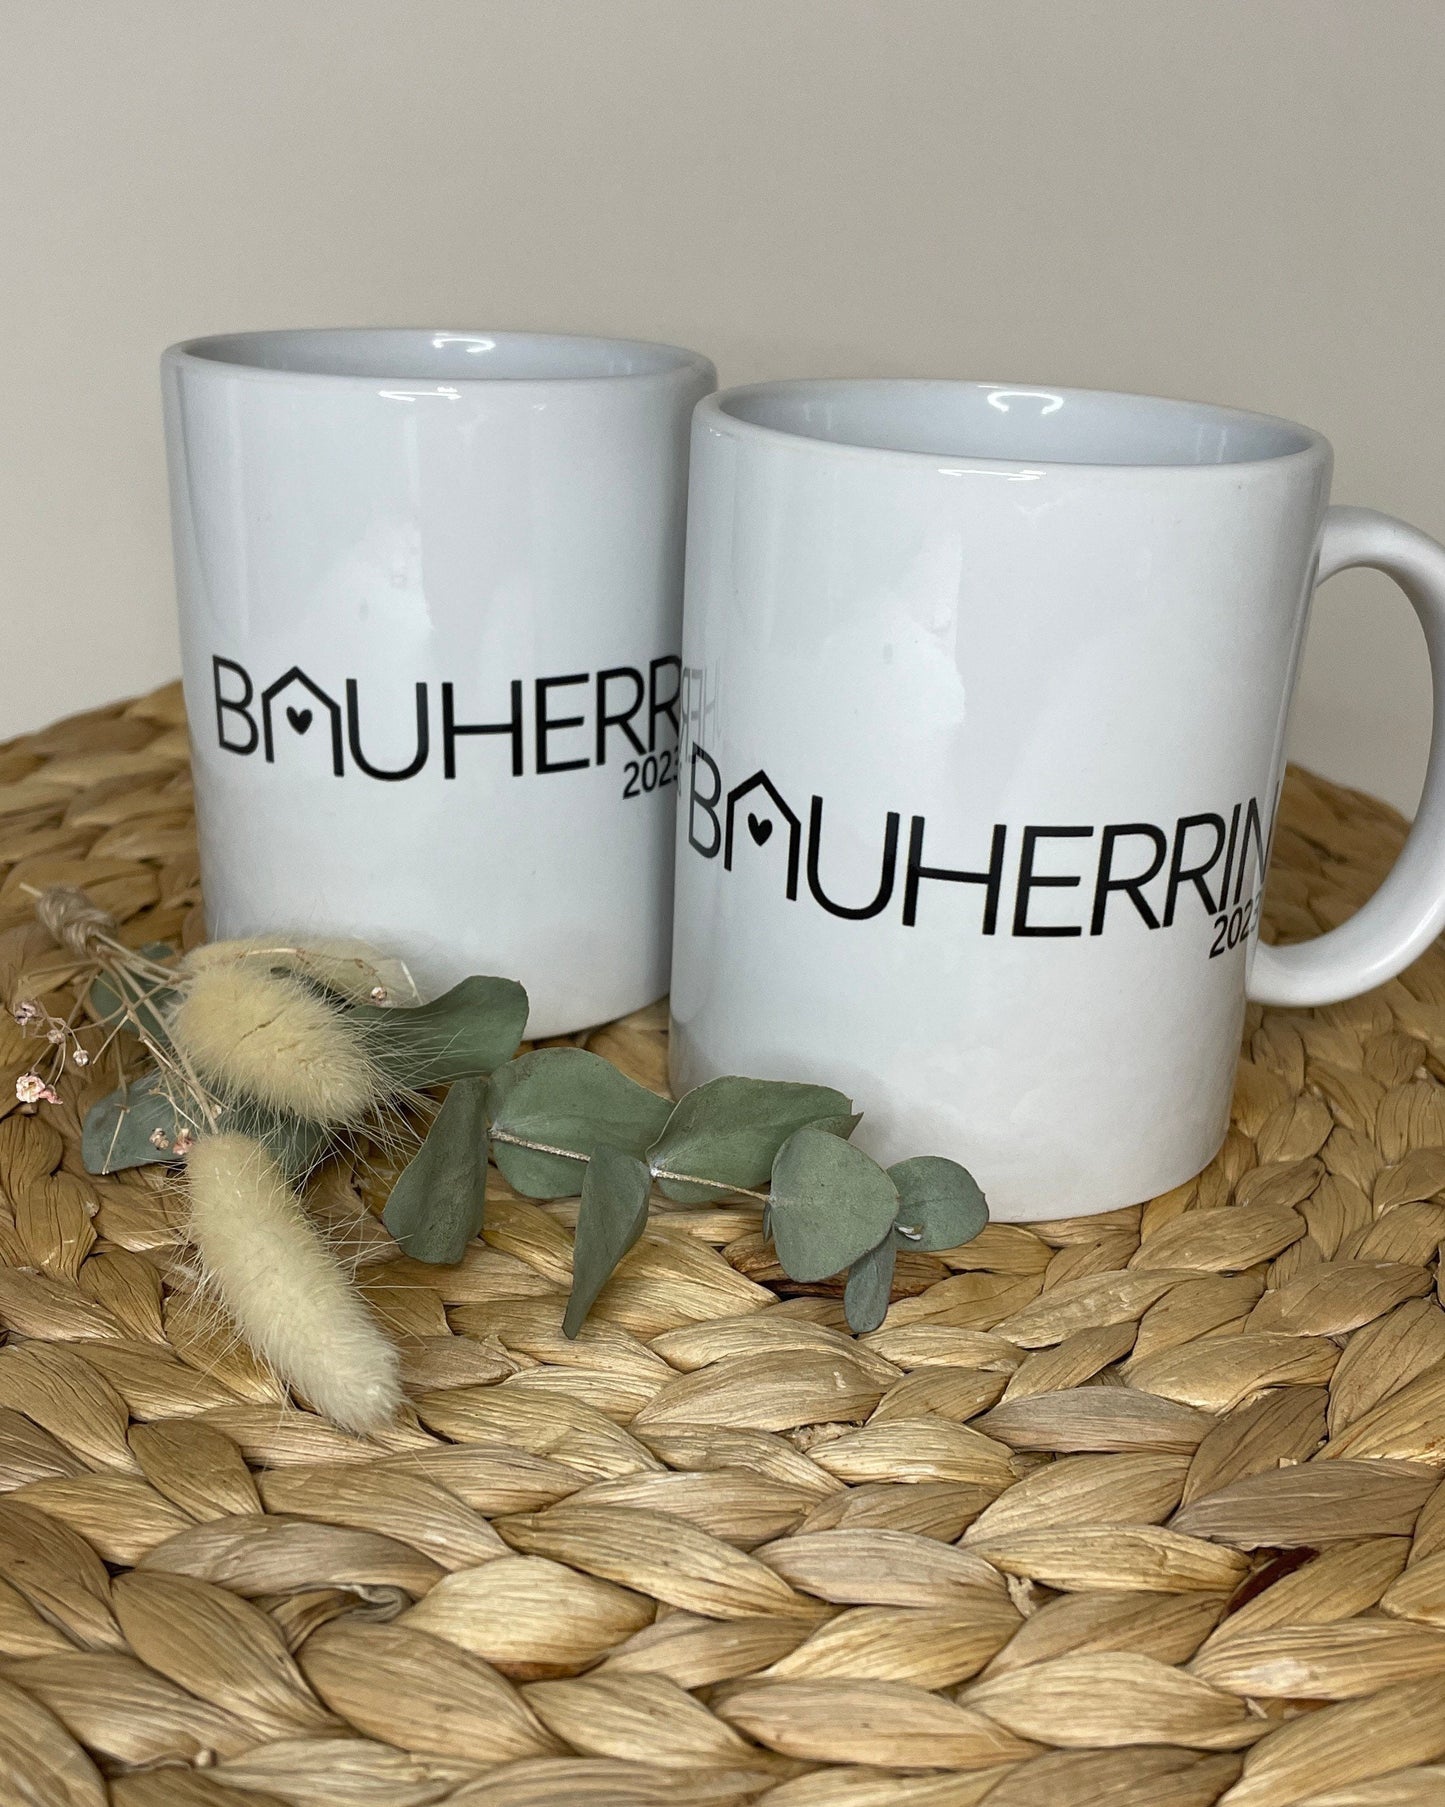 BAUHERR / BAUHERRIN personalisierte Tassen und Schlüsselanhänger / Geschenk für Bauherren